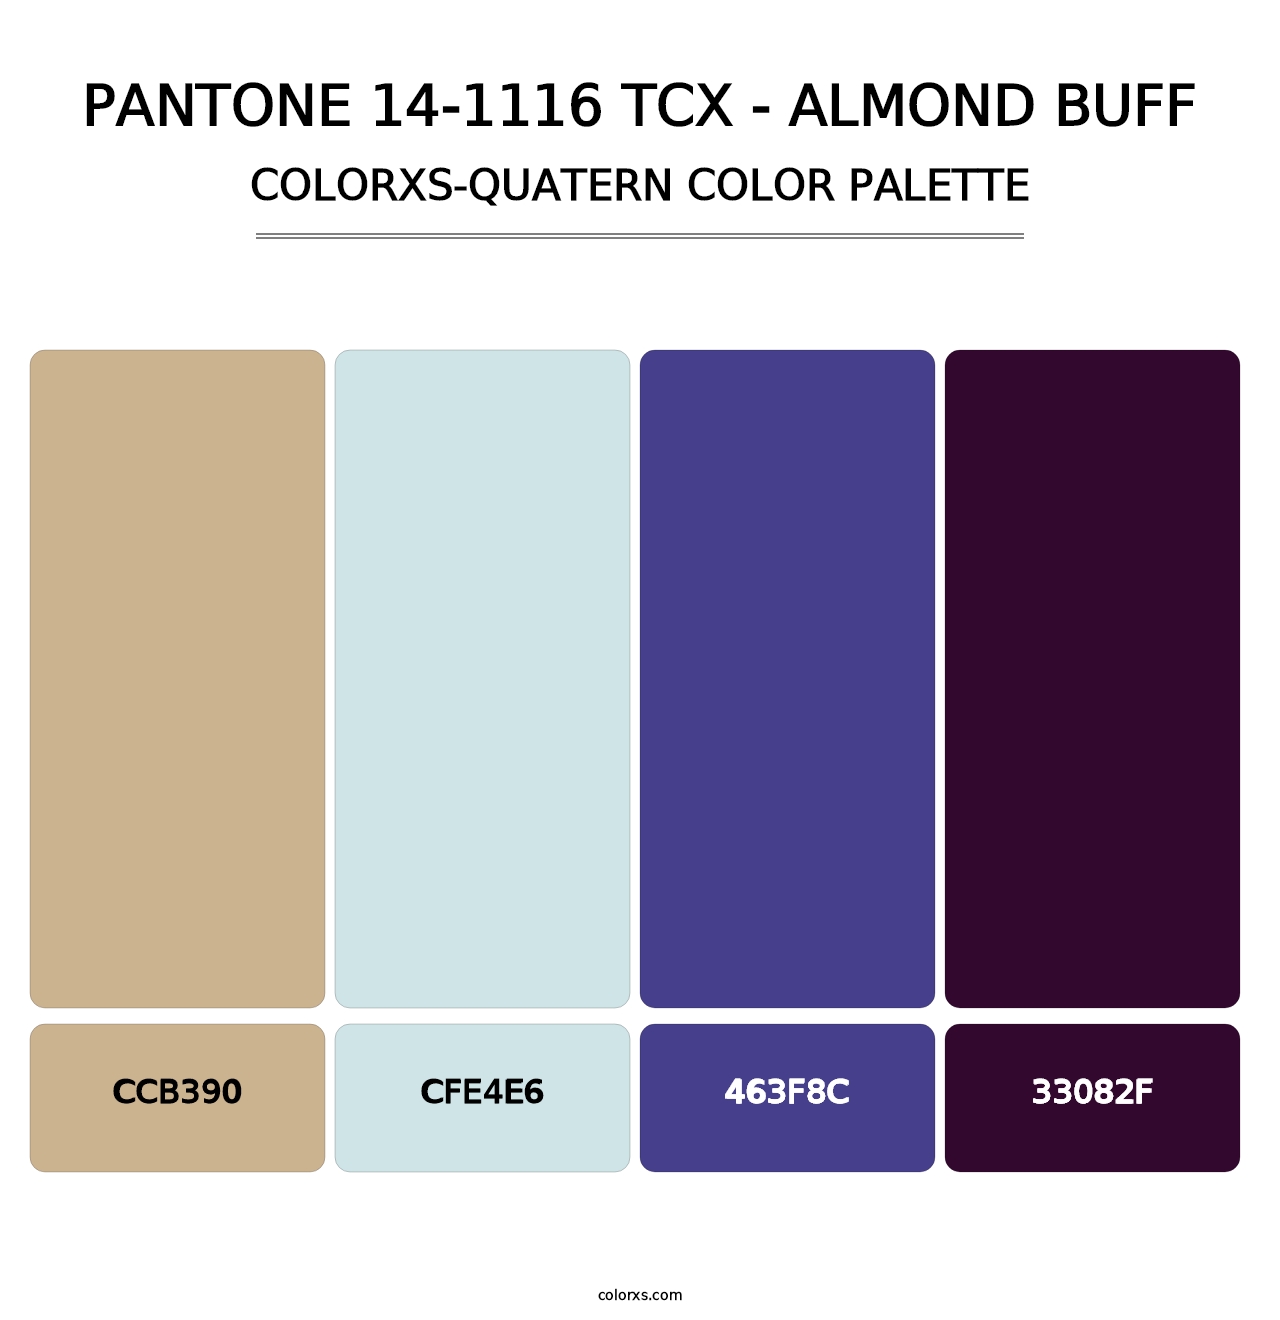 PANTONE 14-1116 TCX - Almond Buff - Colorxs Quatern Palette